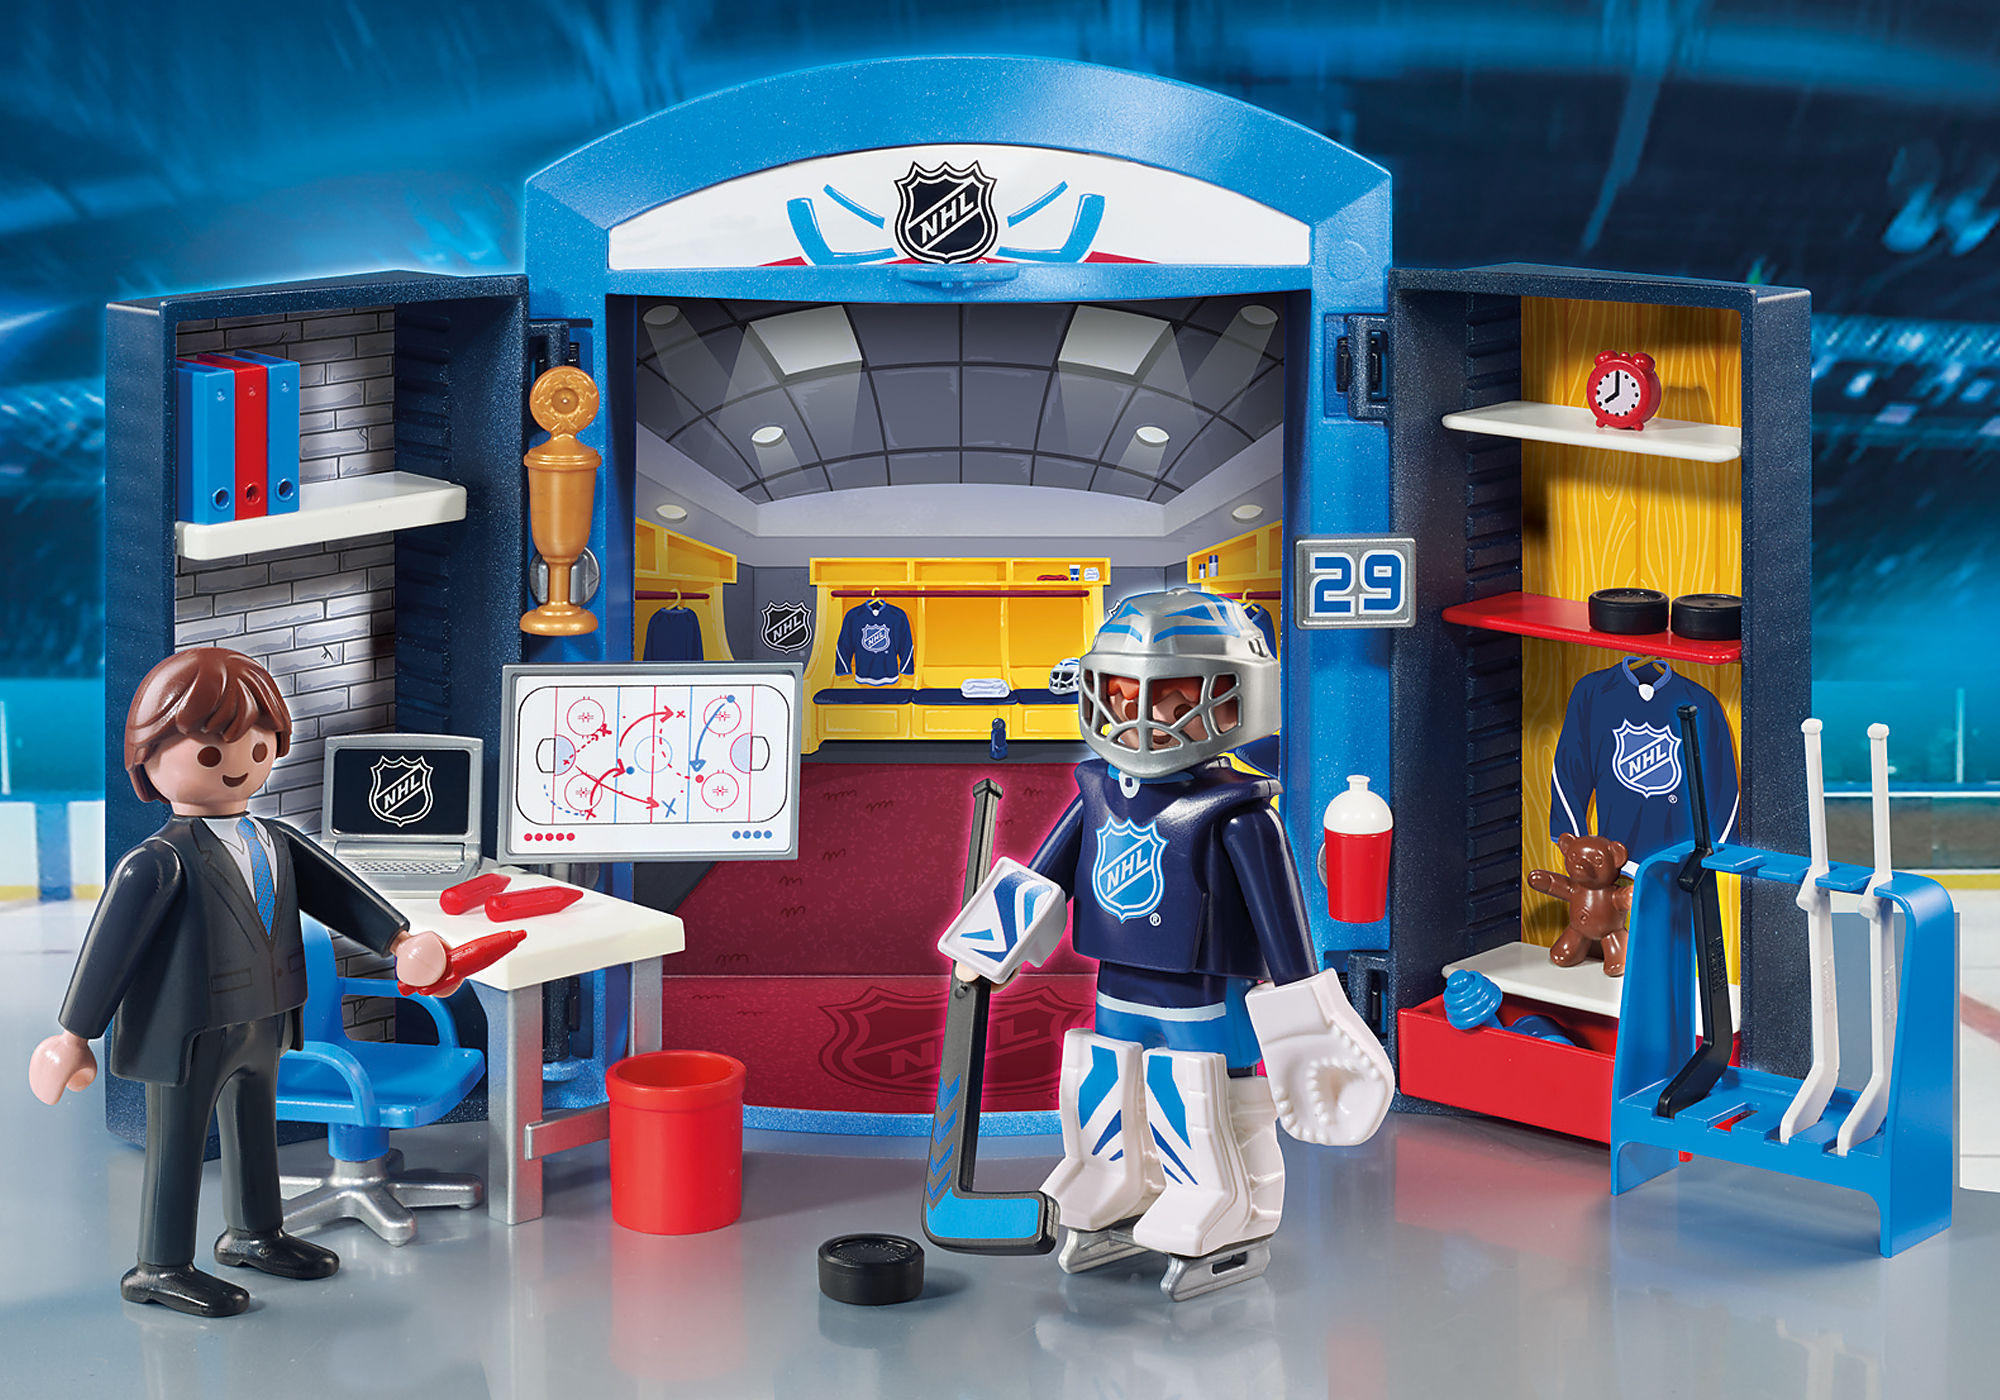  Playmobil NHL Locker Room Play Box, Blue : Toys & Games